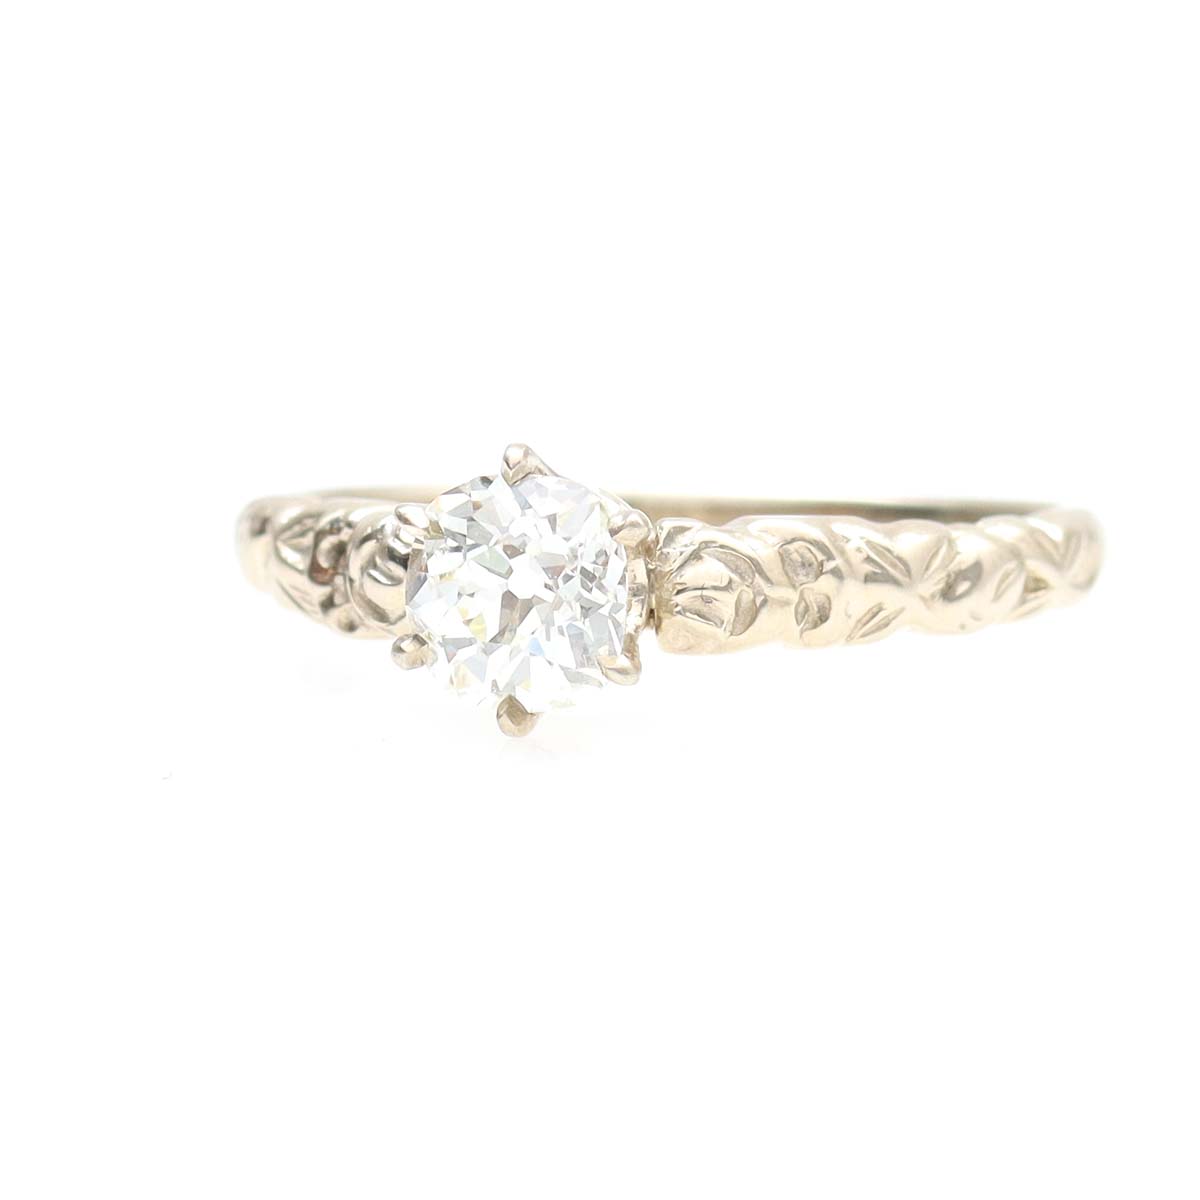 Replica Art Nouveau Engagement Ring #3383-2